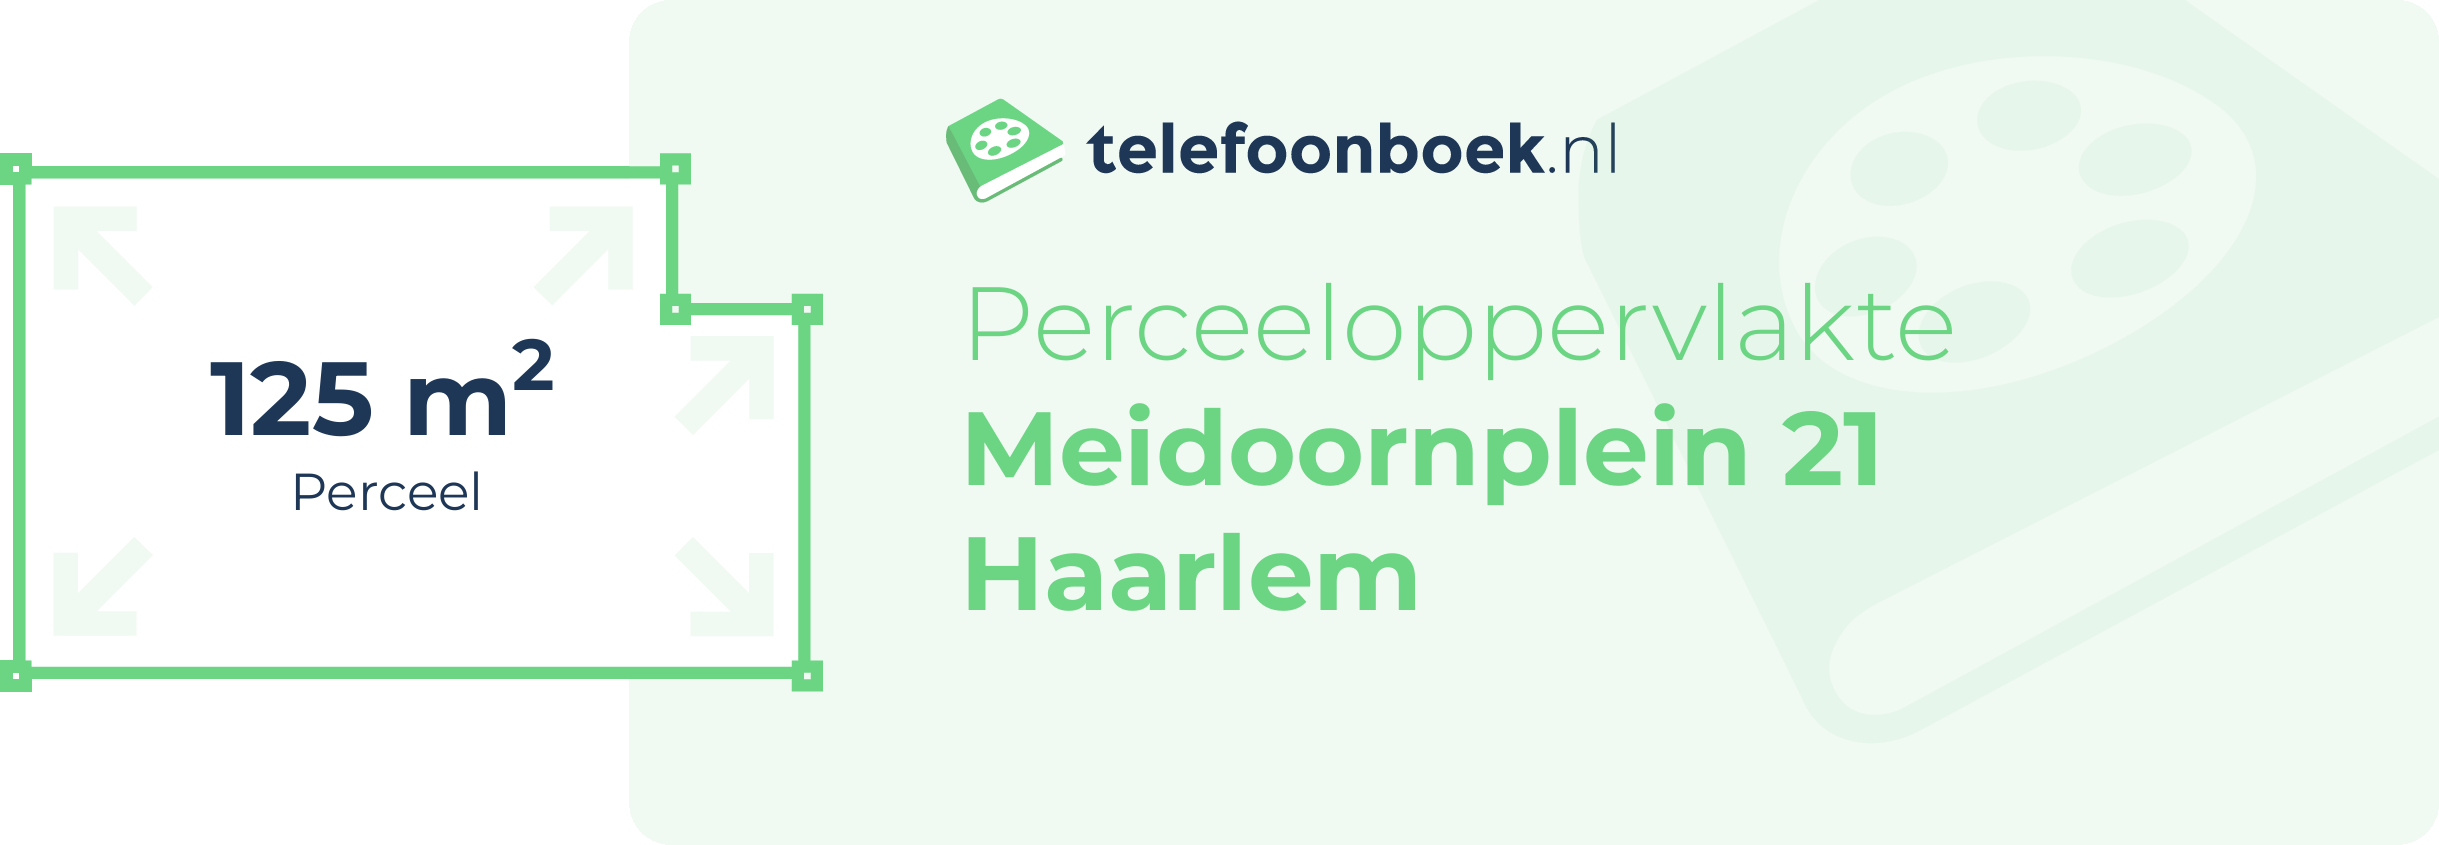 Perceeloppervlakte Meidoornplein 21 Haarlem